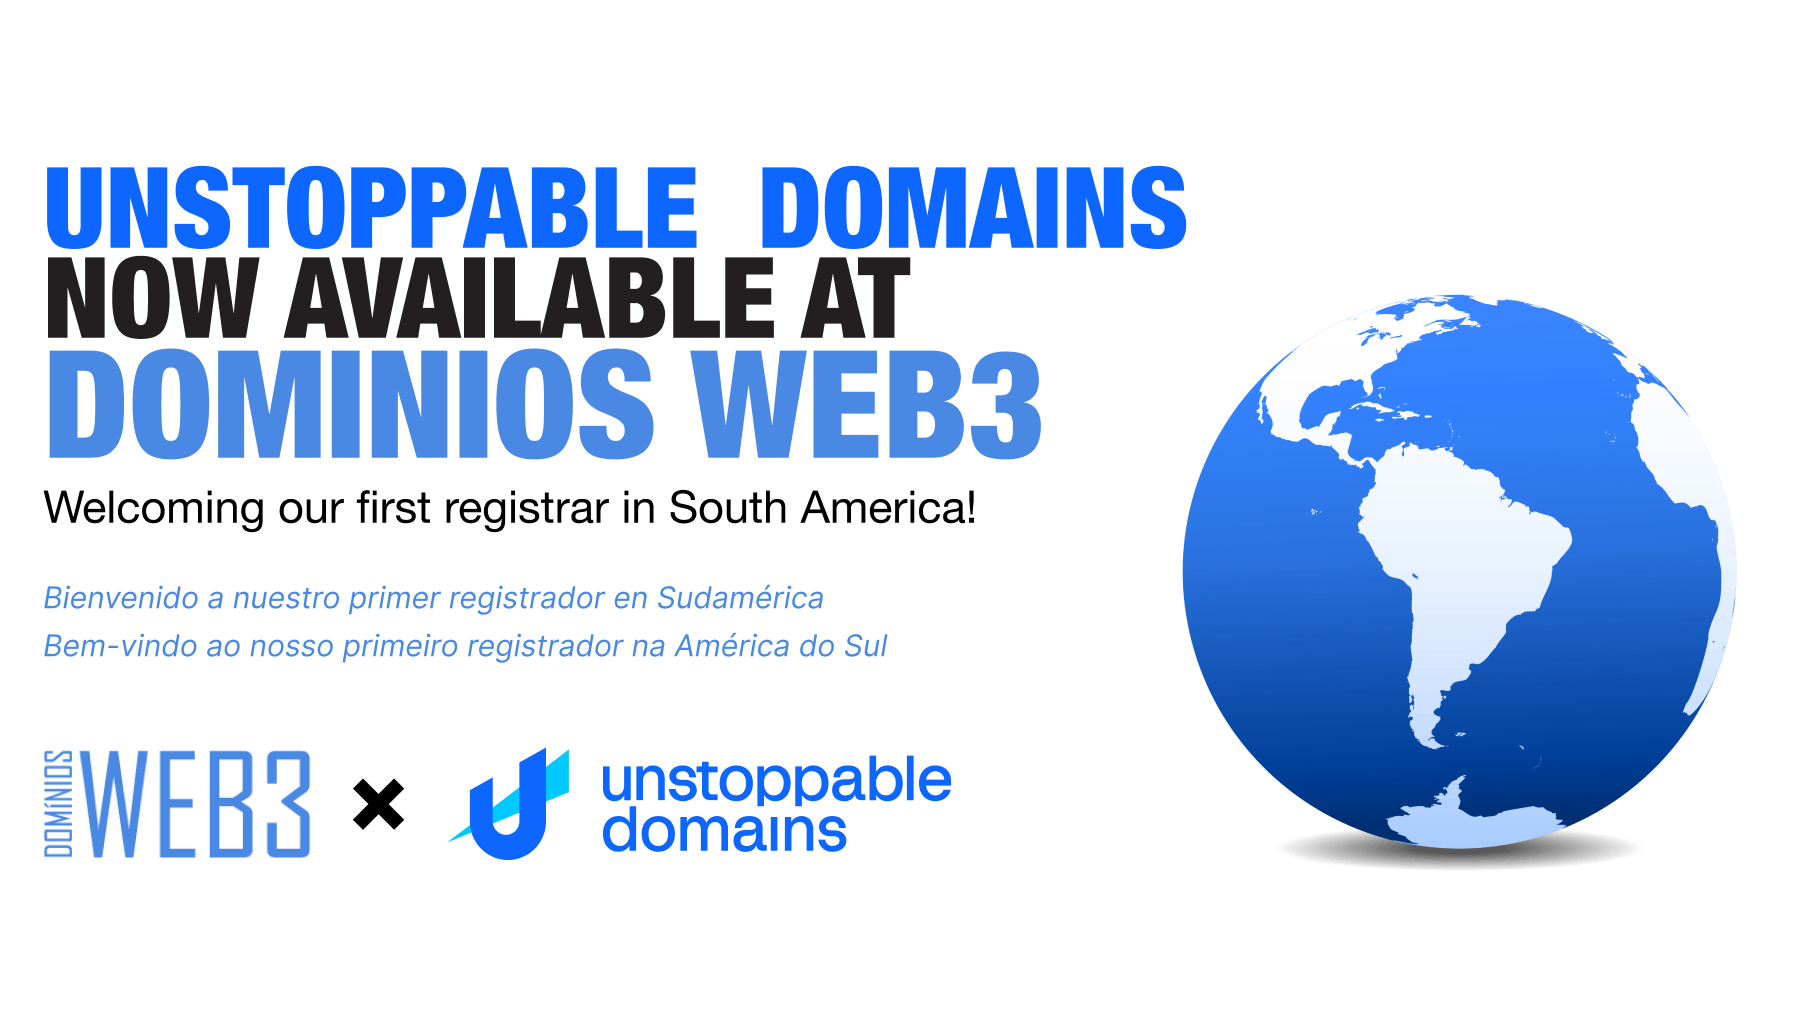 dominiosweb3: Pioneering Web3 Domain Registration in South America